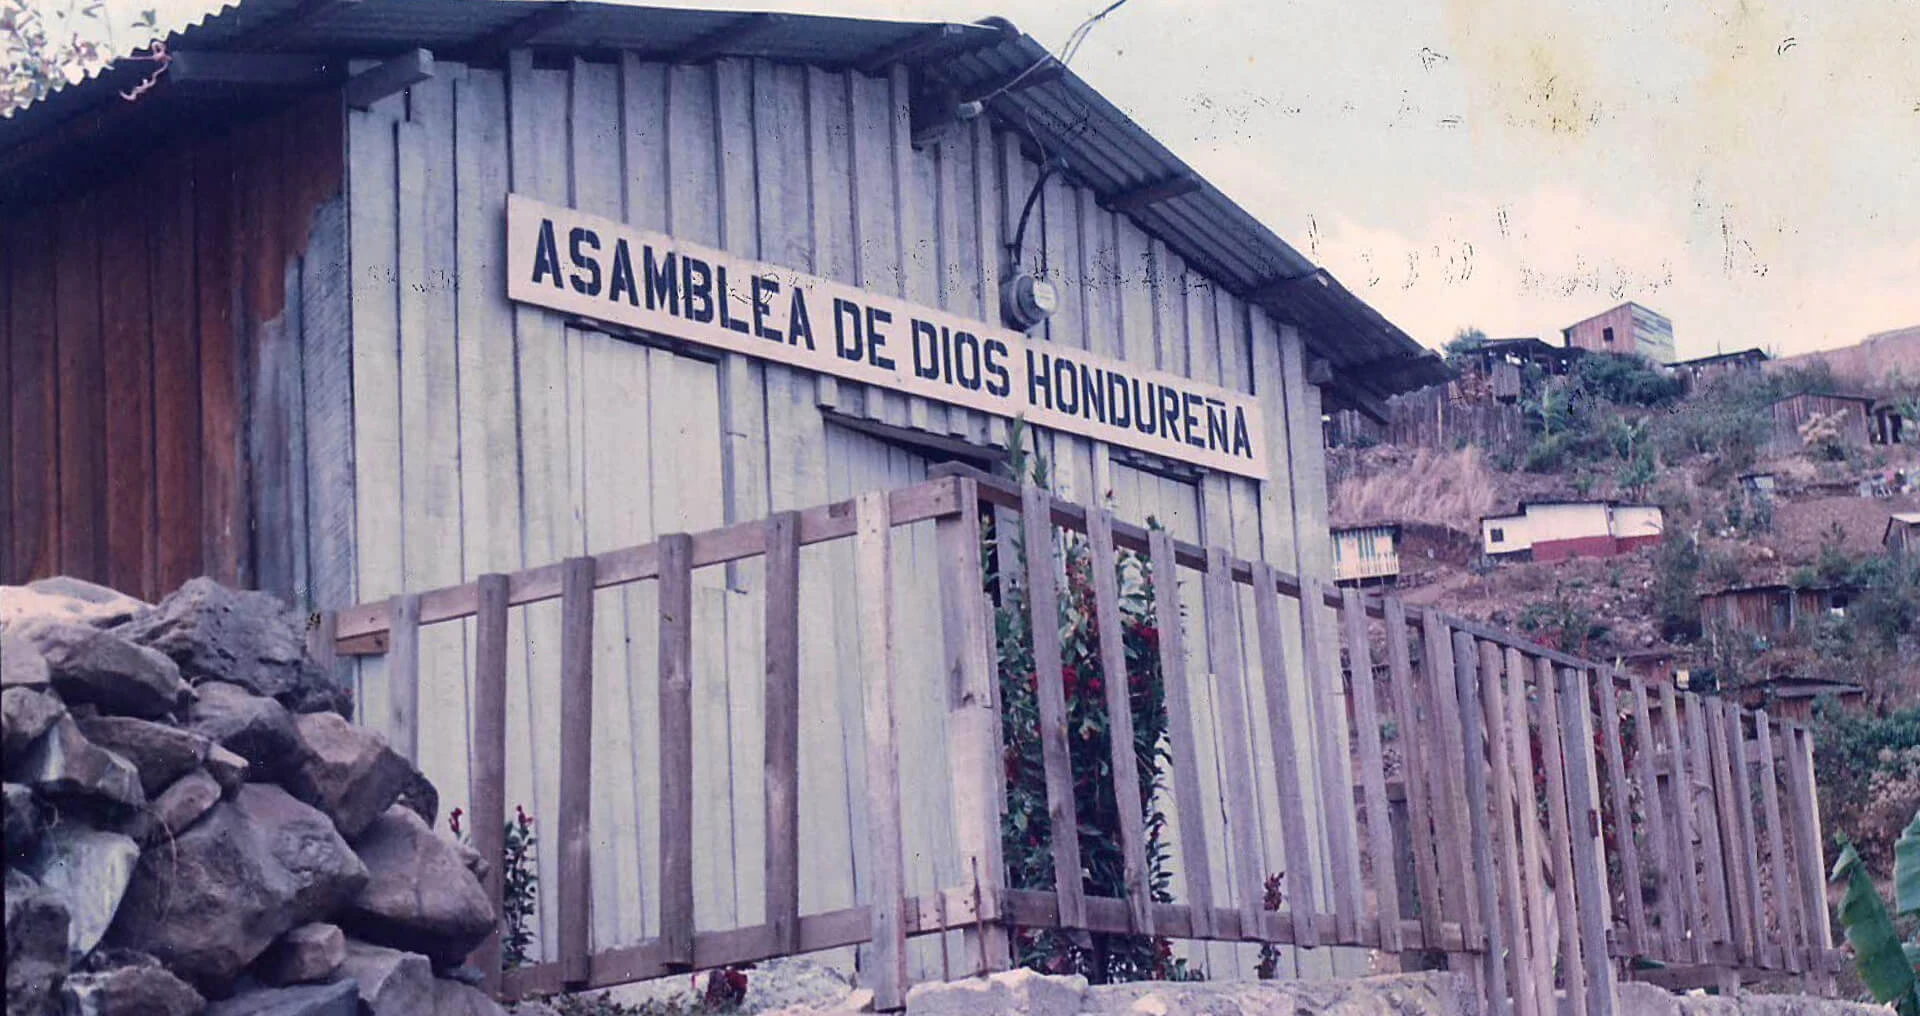 Nossa congregação de Abrahan Lincon (Honduras)